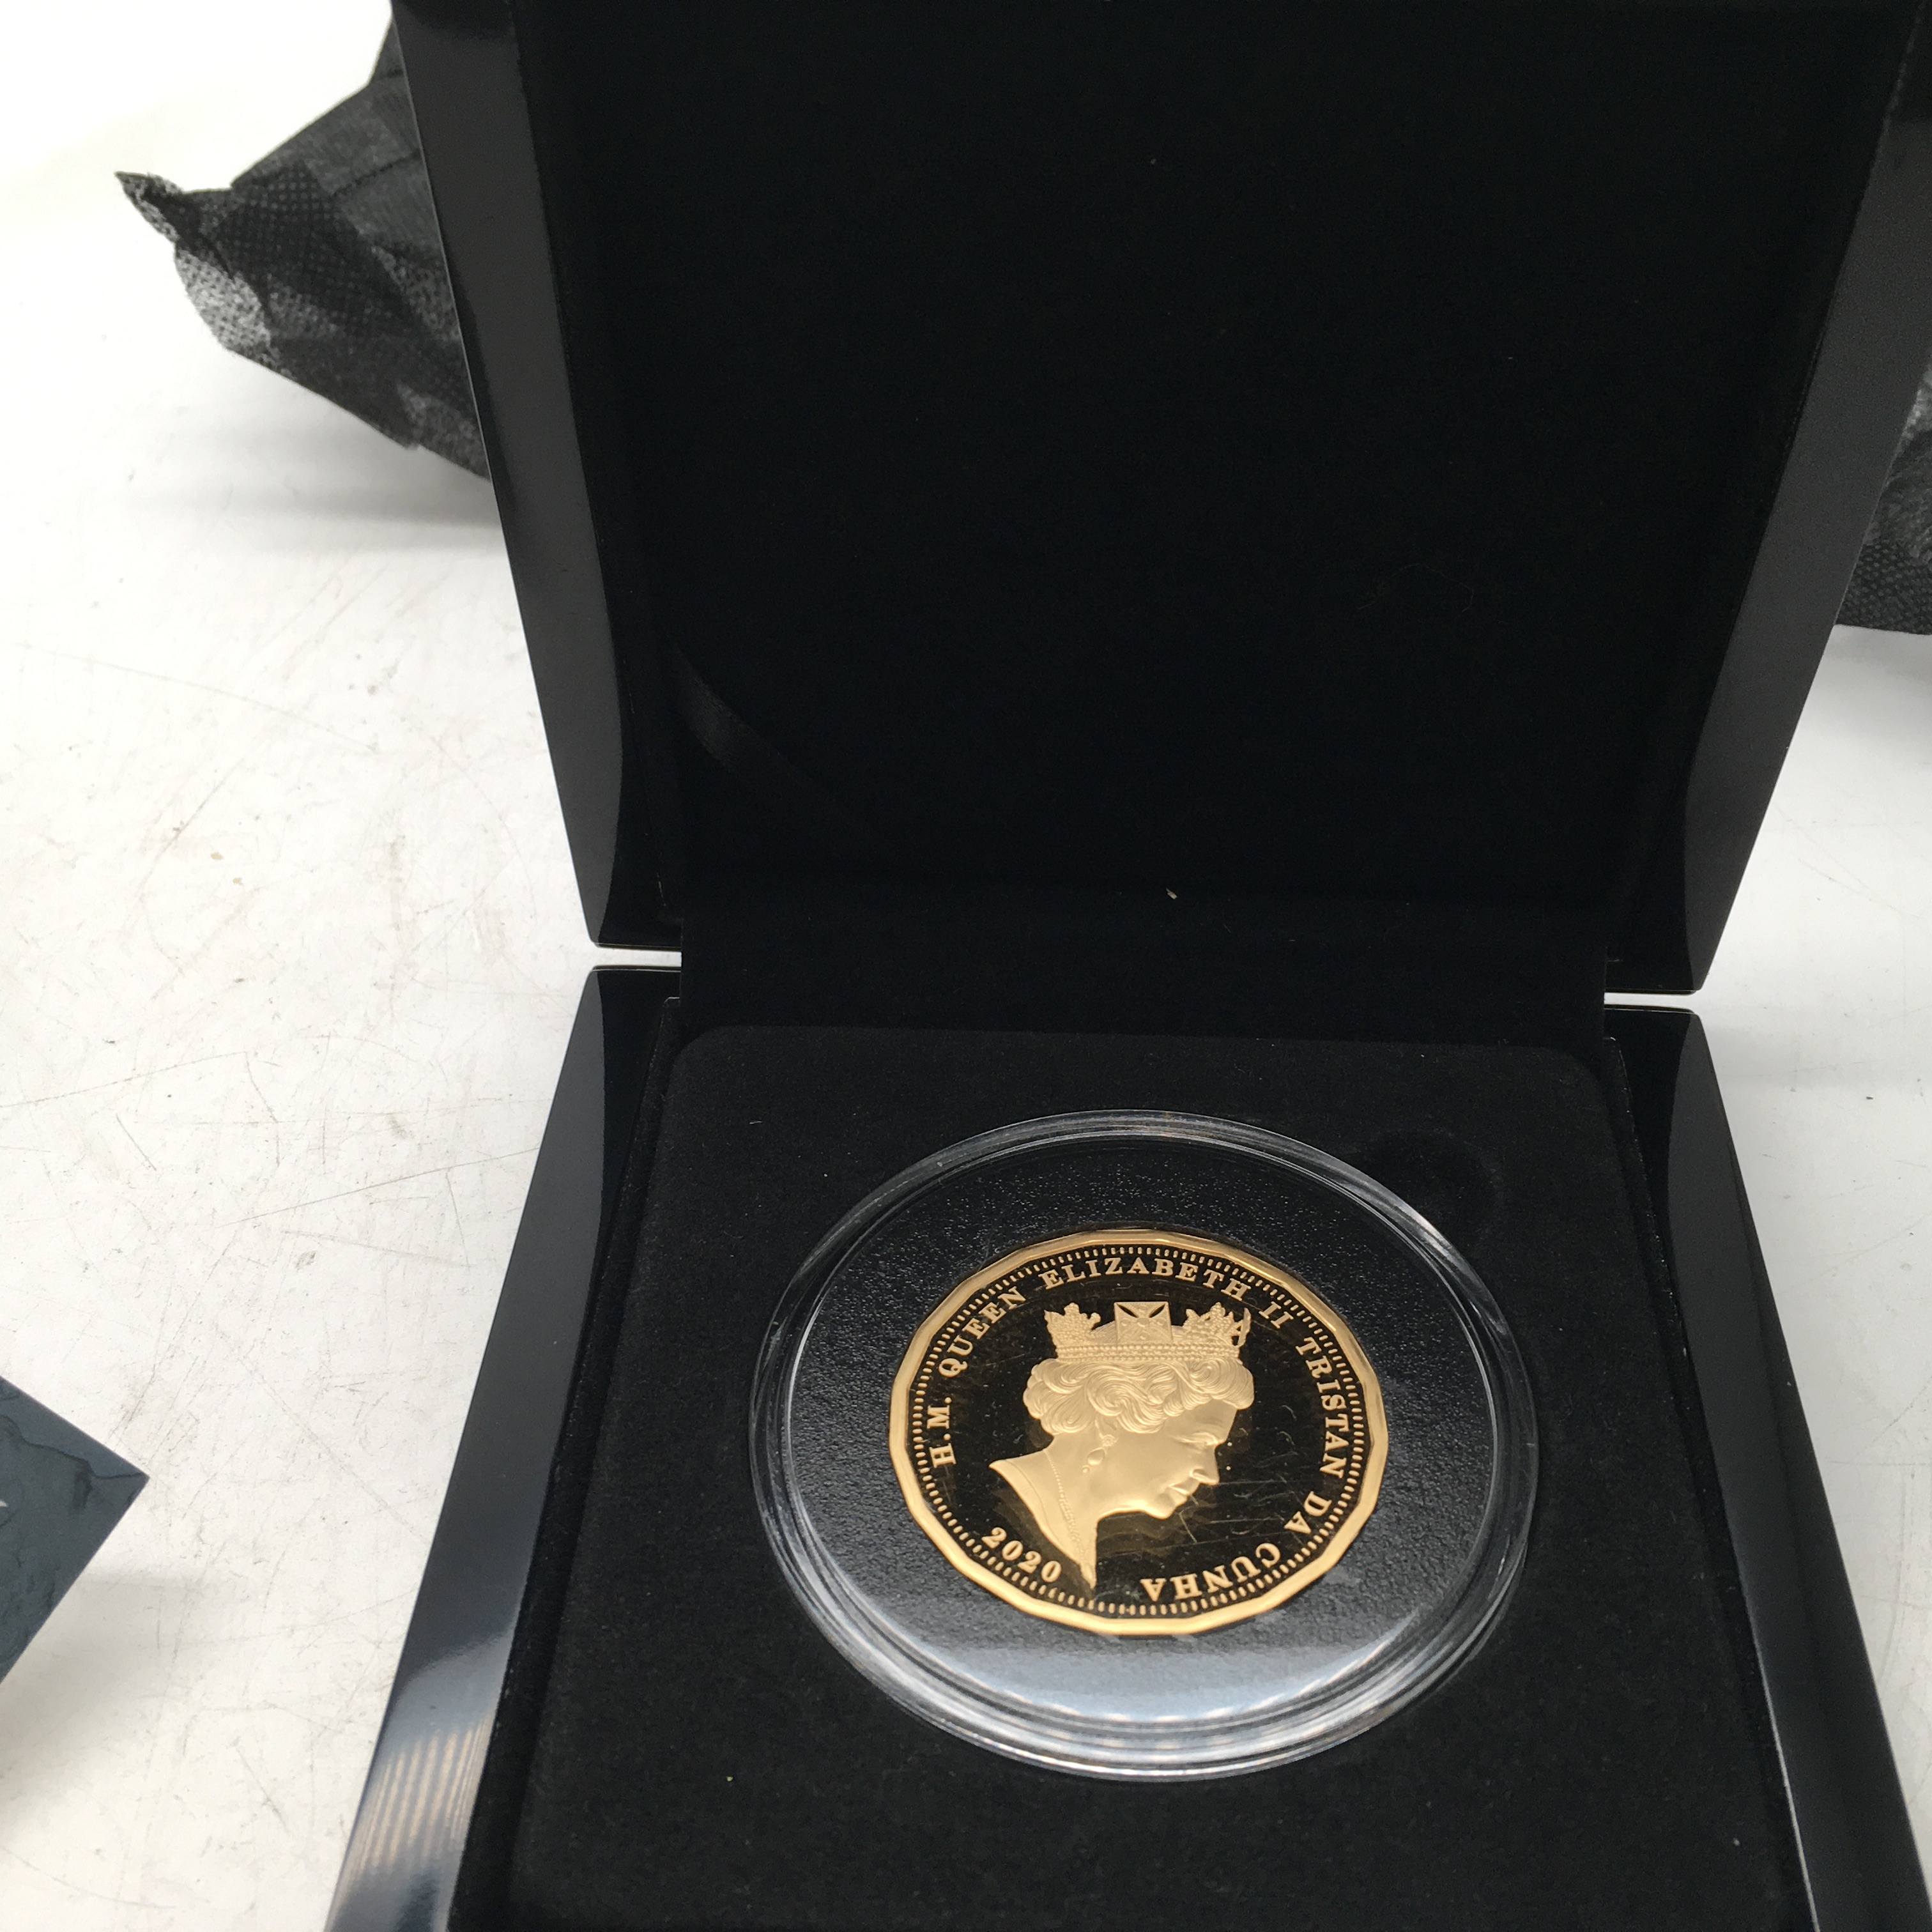 Tristan da Cunha a rare £20 coin 2020 issue celebrating EU Departure, a 20 sided coin 2.5 ounces - Image 2 of 2